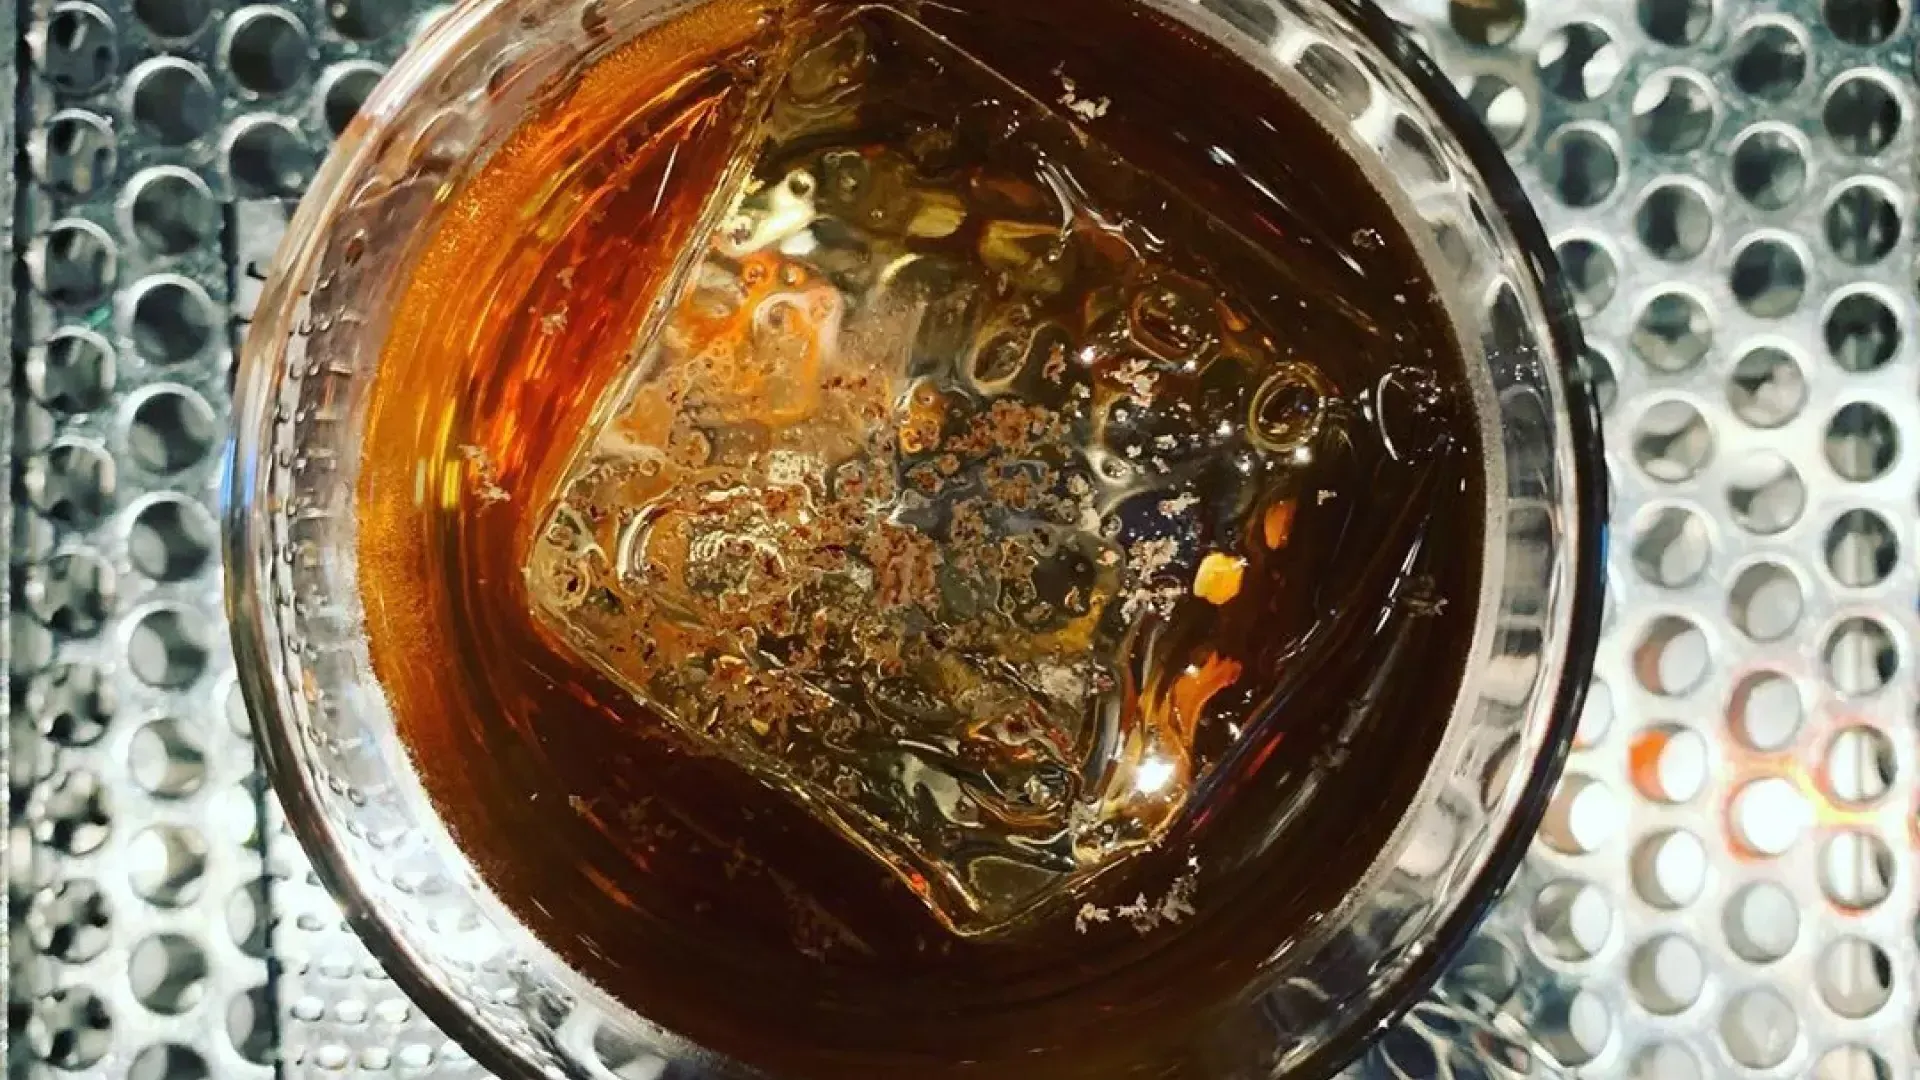 贝博体彩app第三铁路酒吧供应威士忌鸡尾酒.